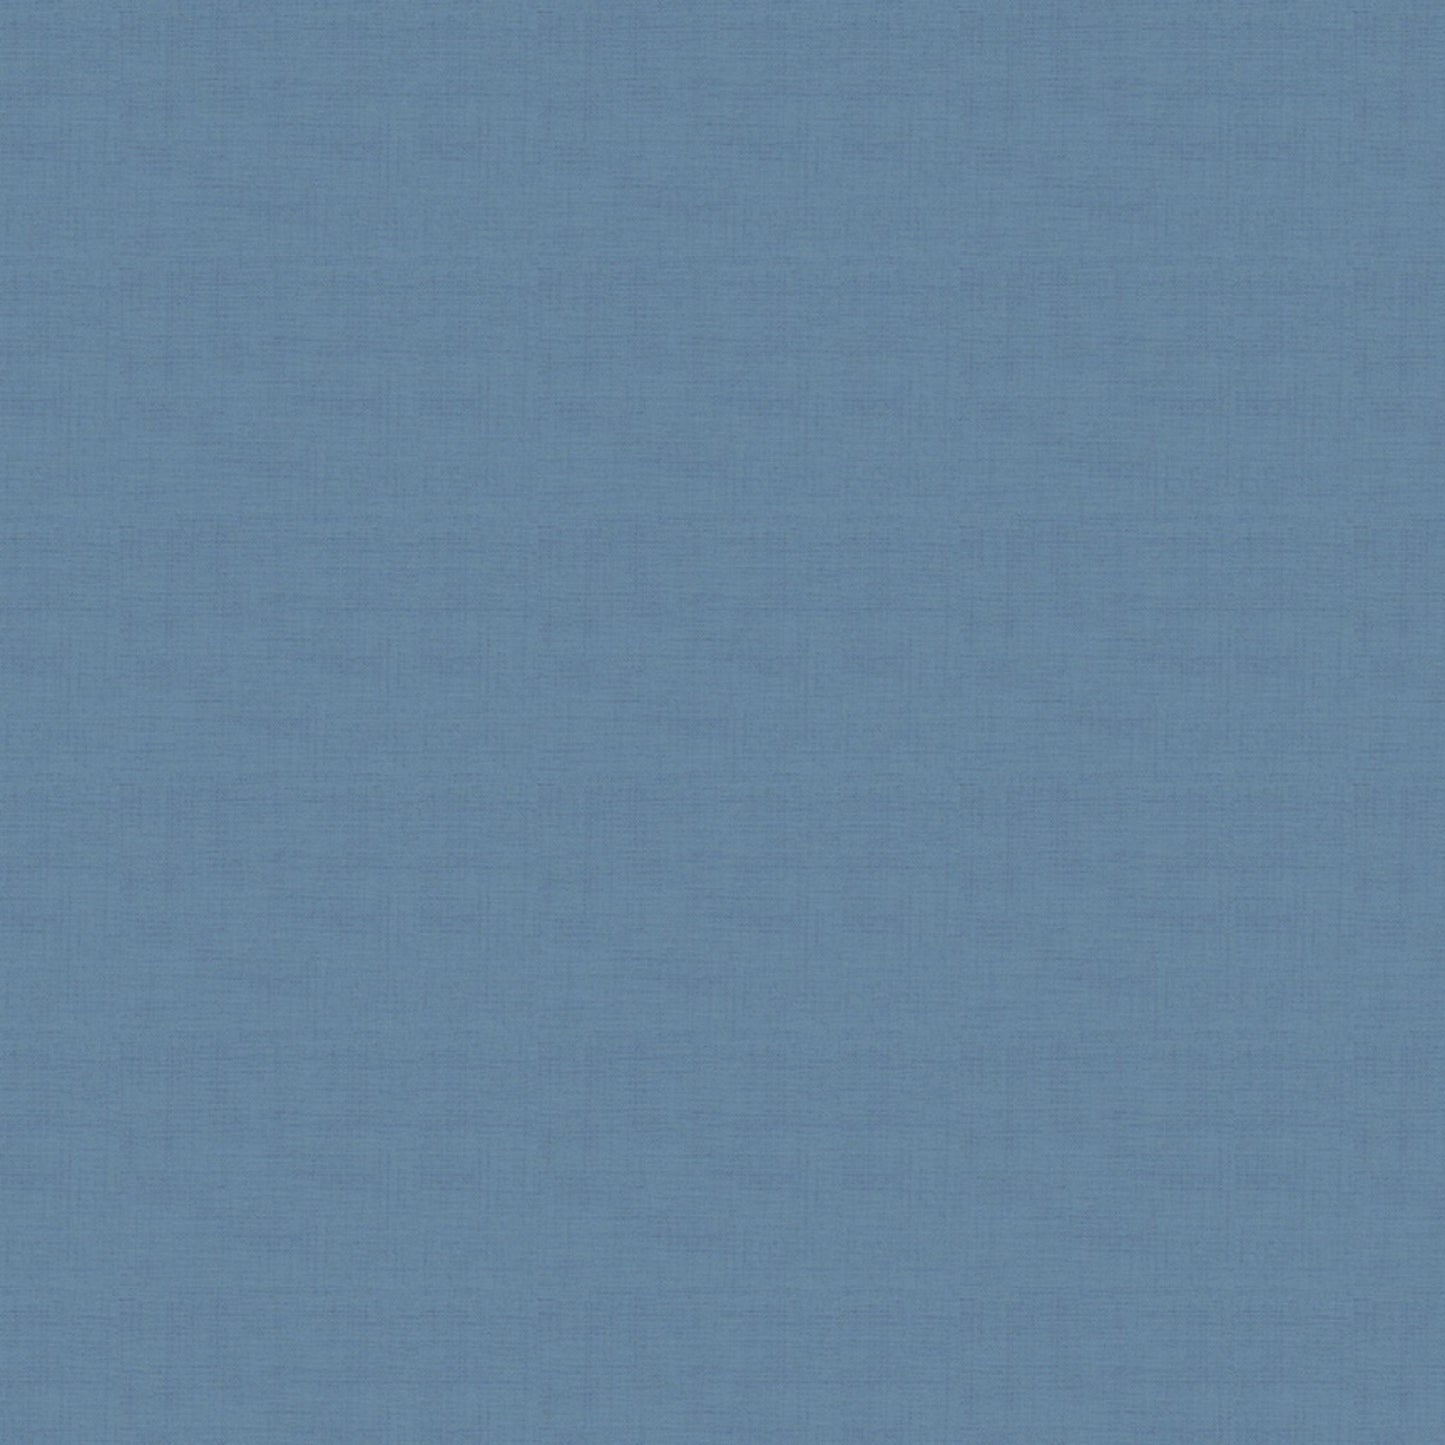 Delft Blue (1473/B26) - Linen Texture range of fabric by Makower